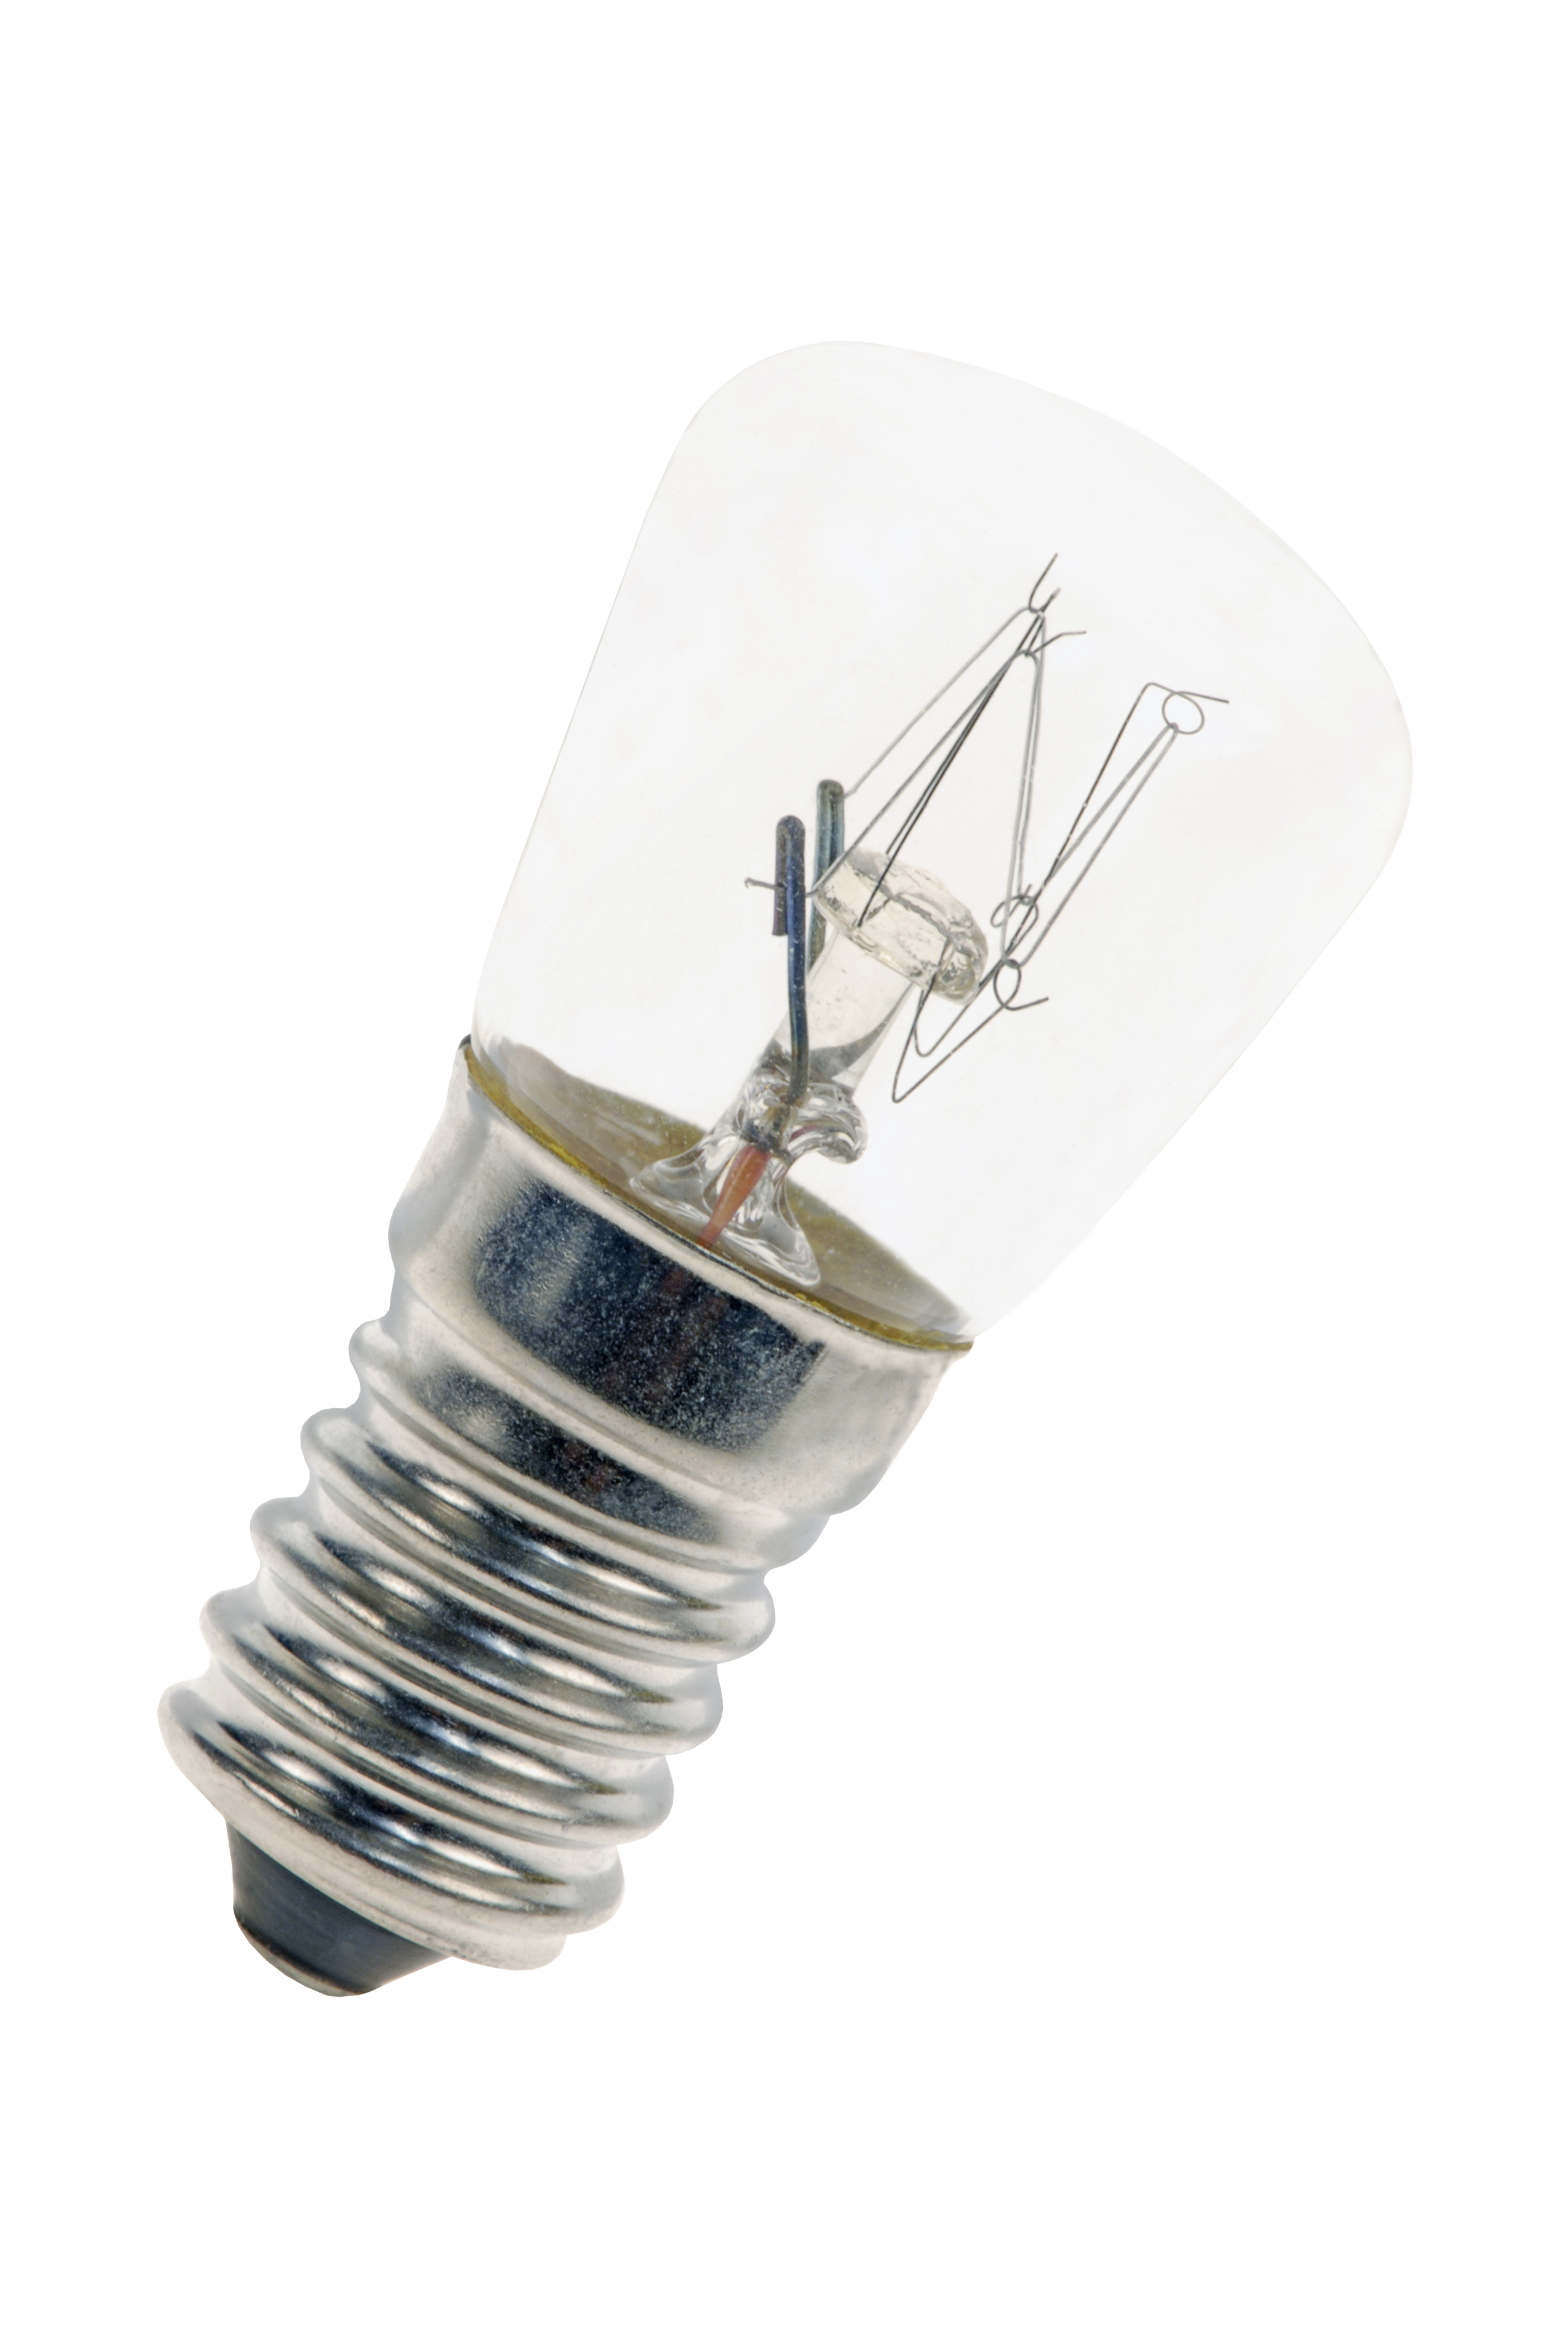 Ampoule E14 12V 10W pour veilleuse ou autre